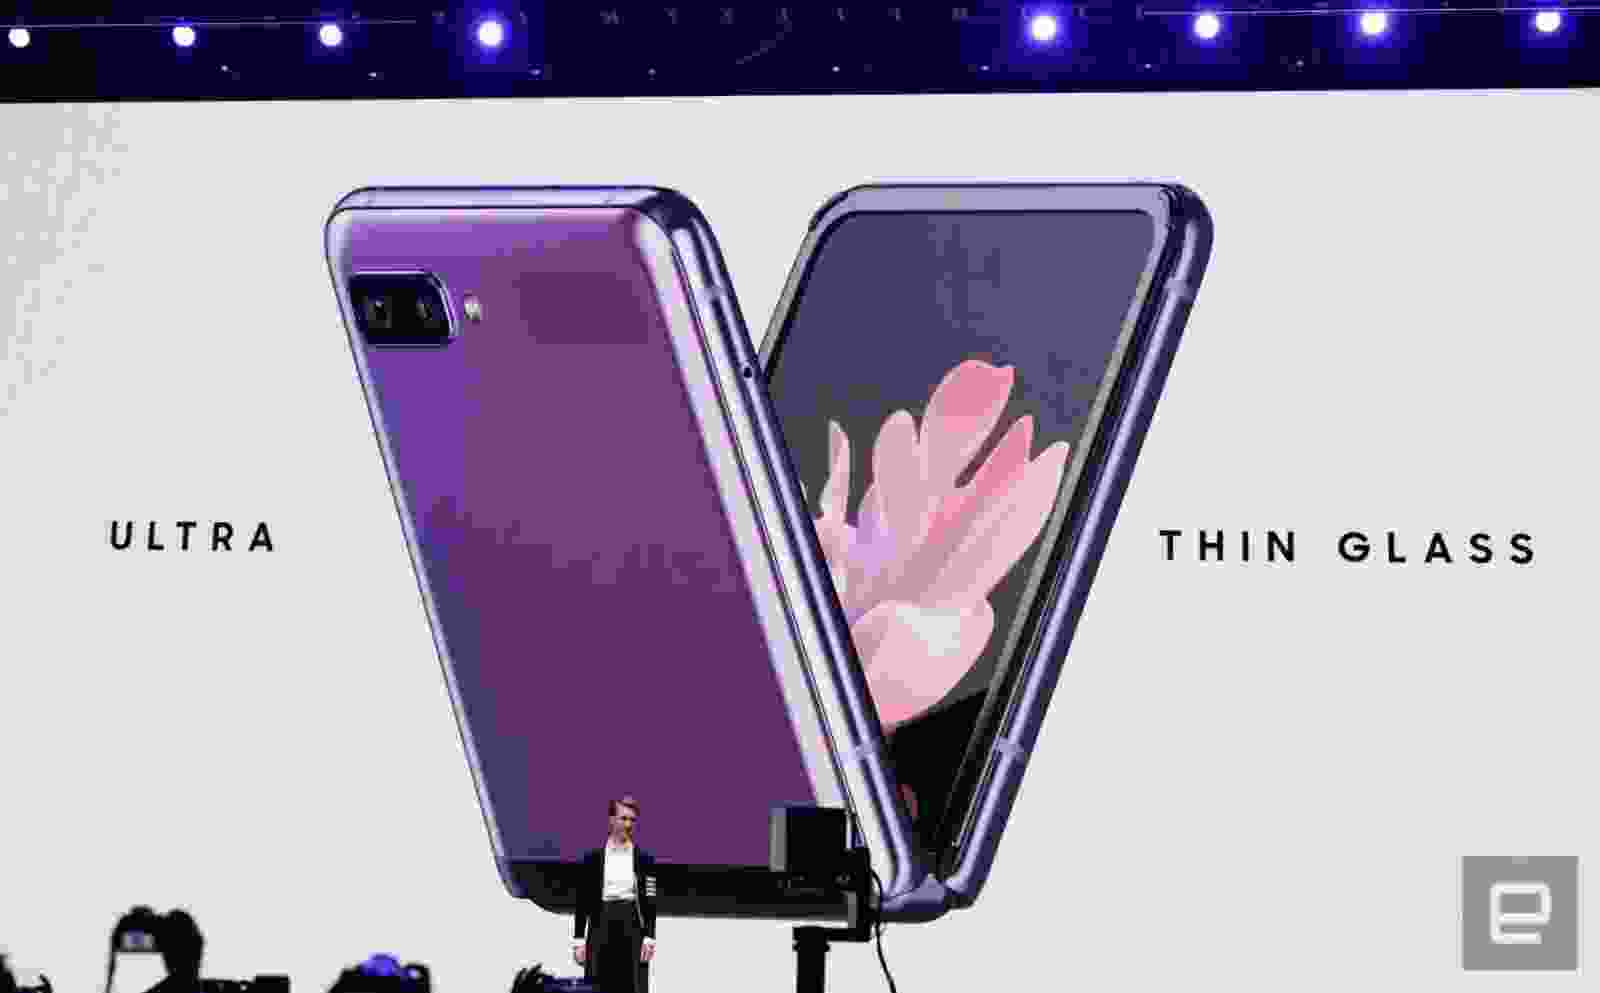 Samsung Galaxy Z Flip 3: Cùng đón xem hình ảnh vô cùng ấn tượng của chiếc điện thoại Samsung Galaxy Z Flip 3 mới nhất với thiết kế xếp gọn độc đáo và màn hình tràn viền siêu đẹp. Bạn không thể bỏ lỡ chiếc điện thoại đột phá đầy tiện nghi này!